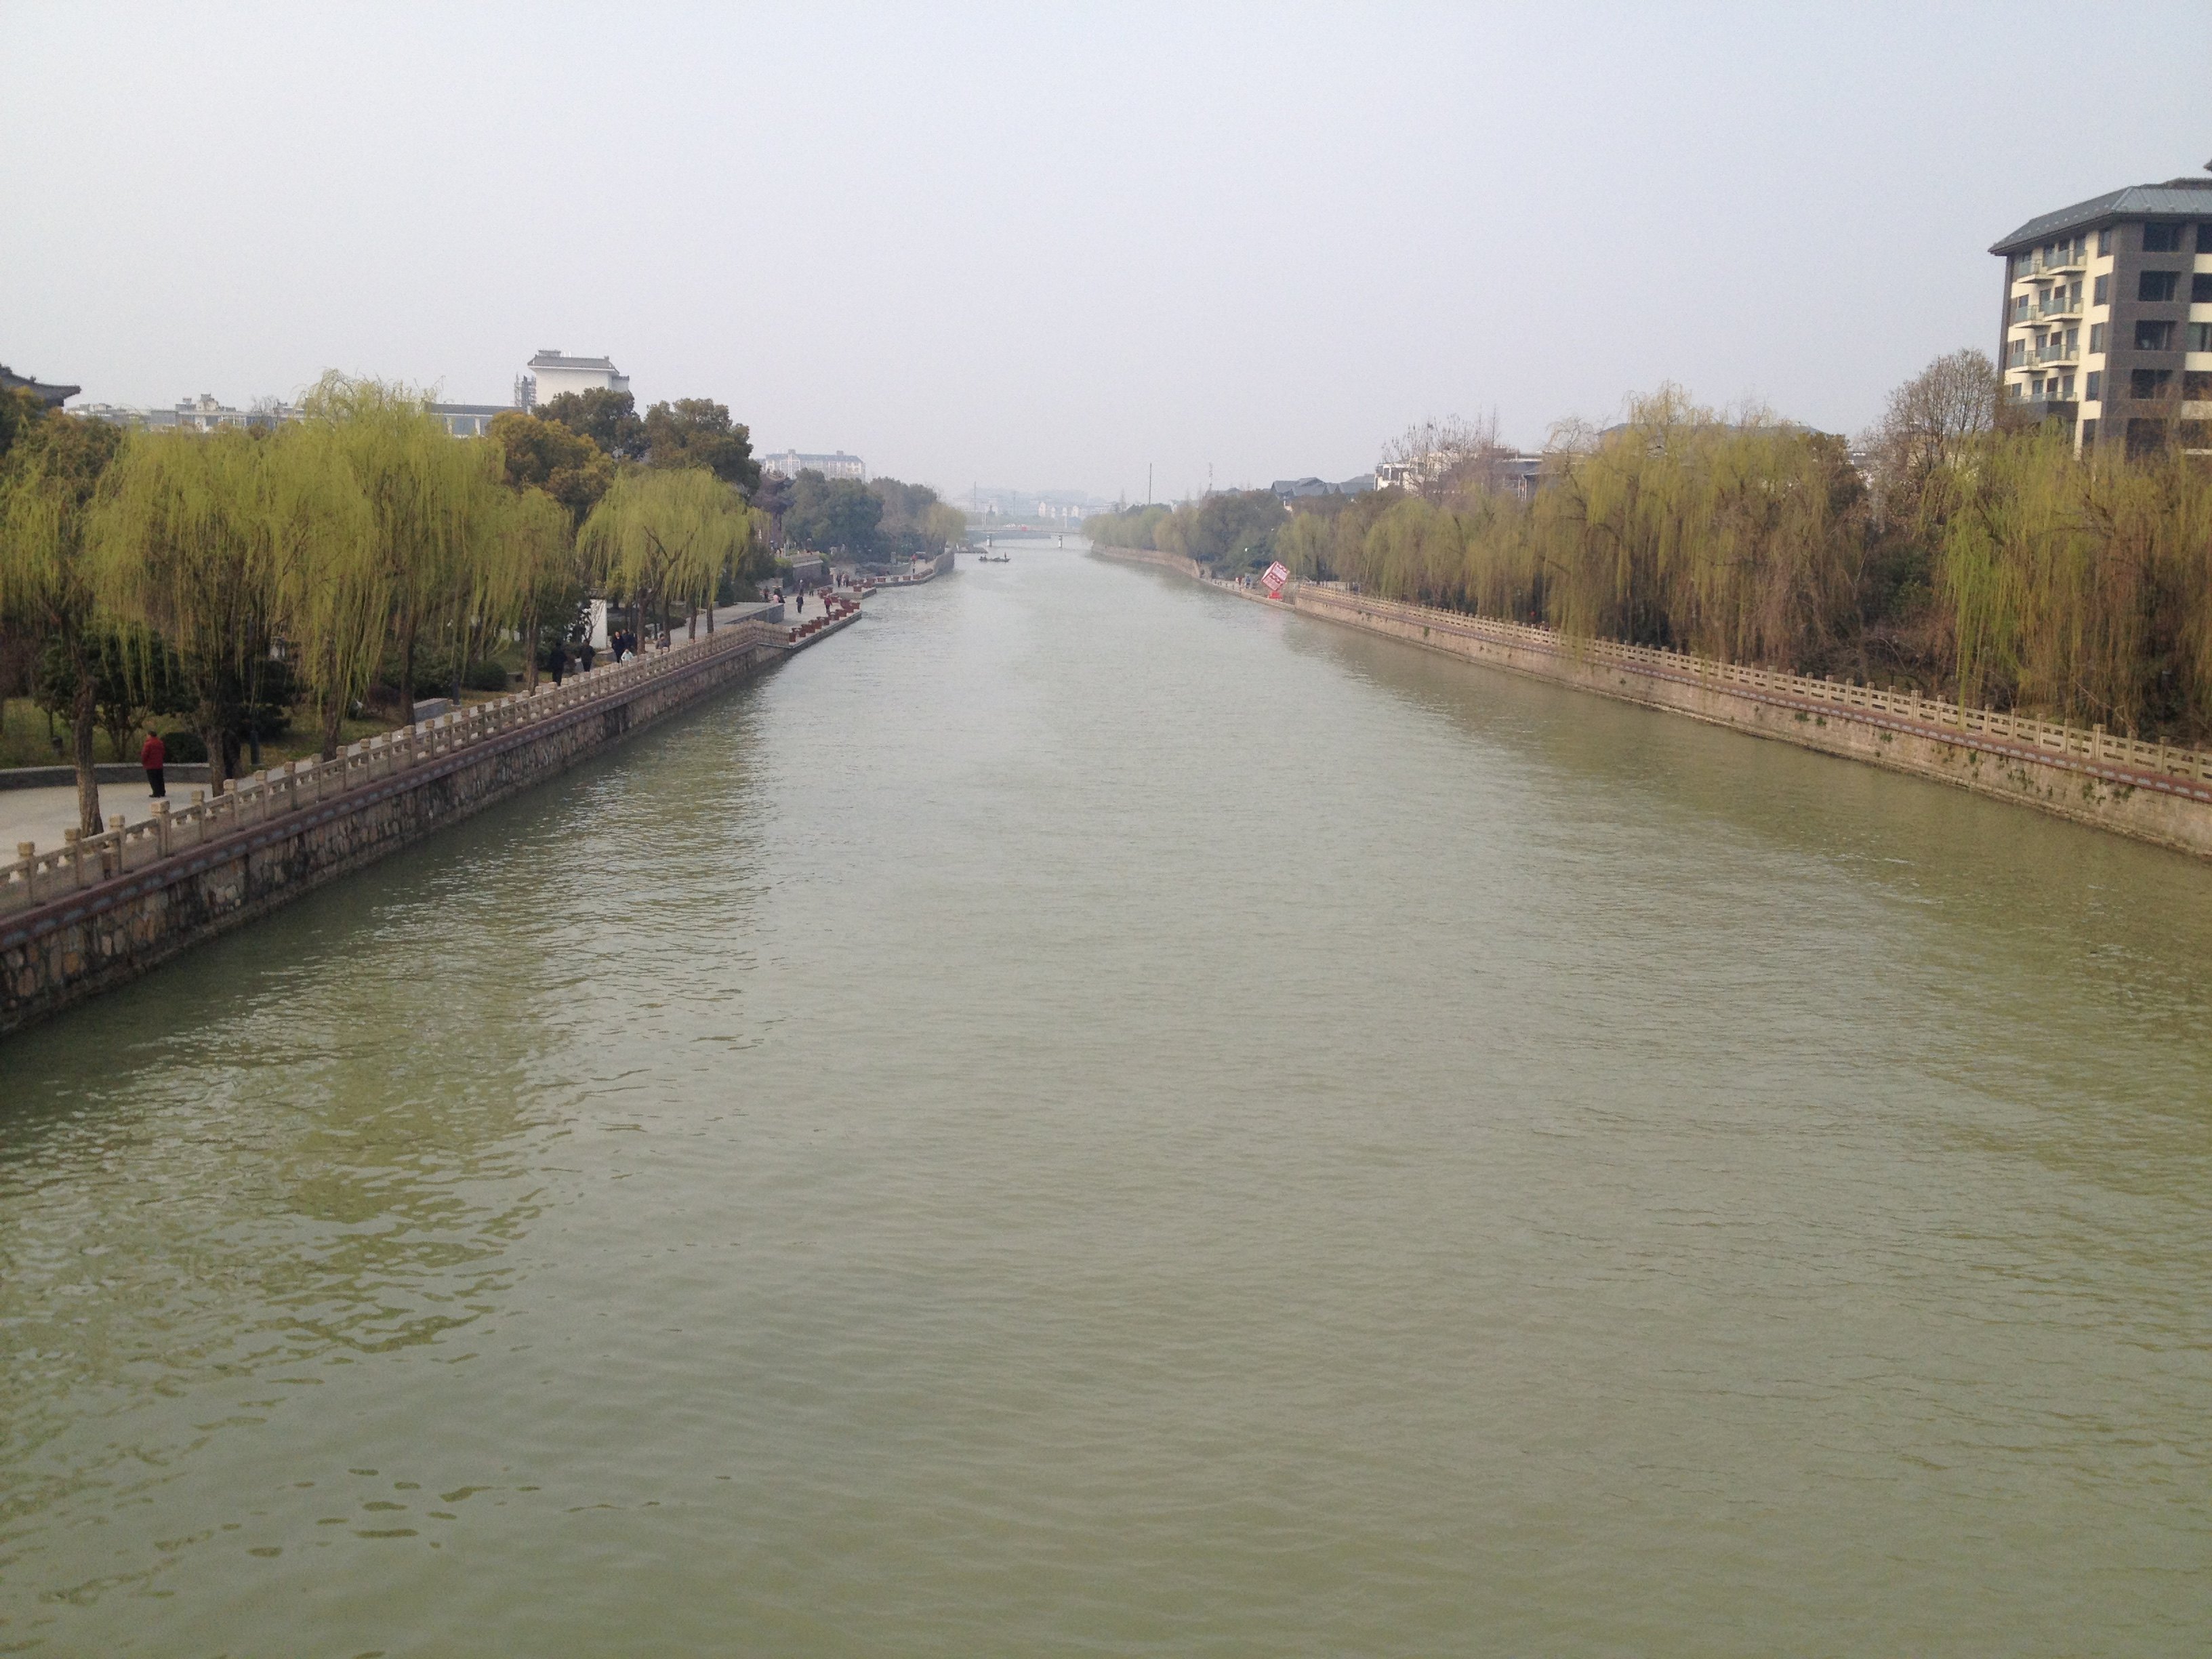 扬州古运河